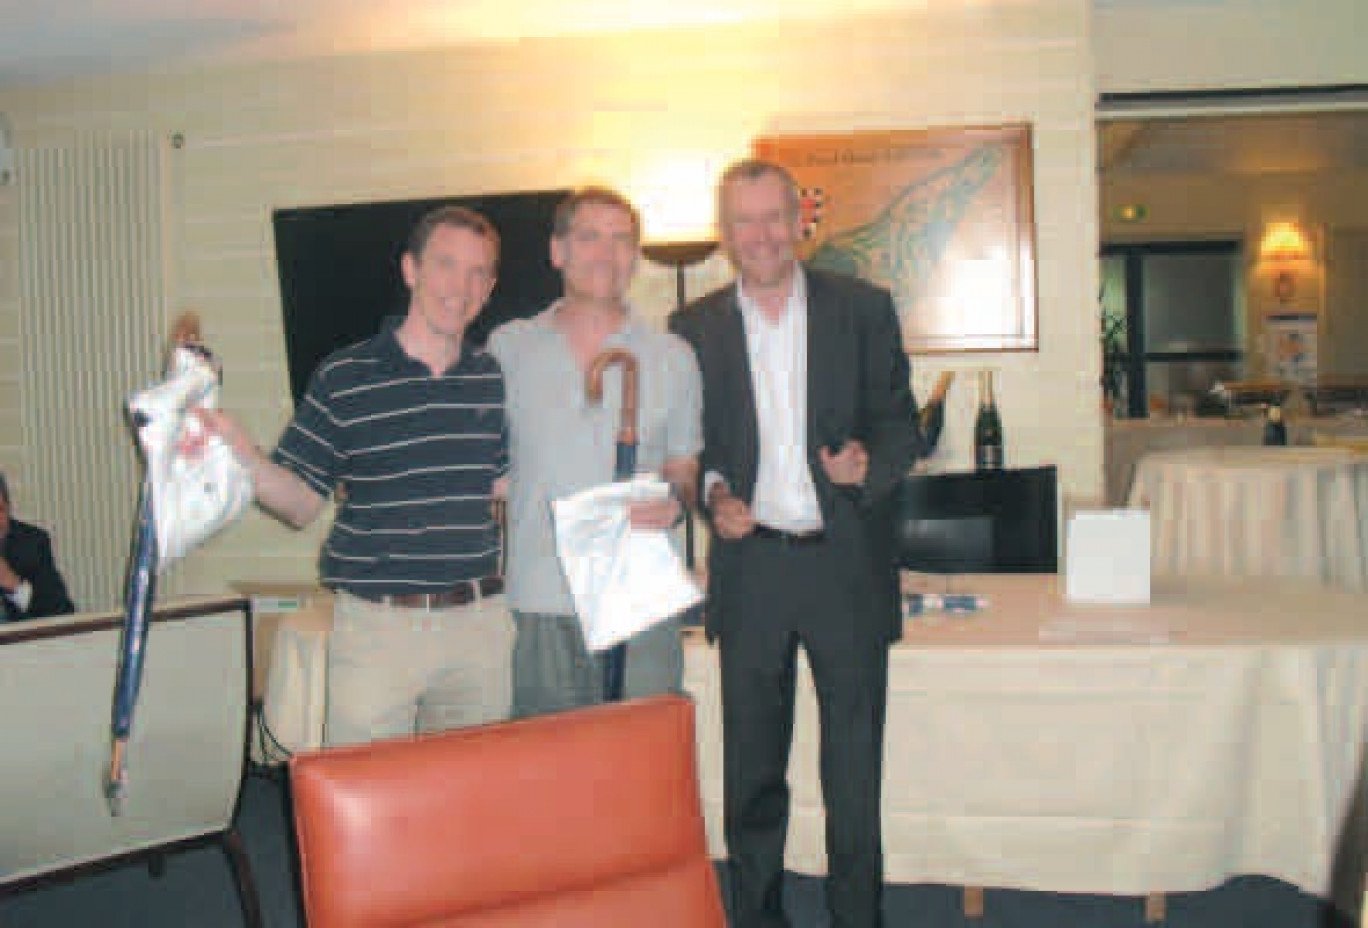 Les vainqueurs du tournoi de golf, Vincent Delesalle et Maxime Couvreur, avec le représentant de la société Tostain & Laffineur (Plaine Images).